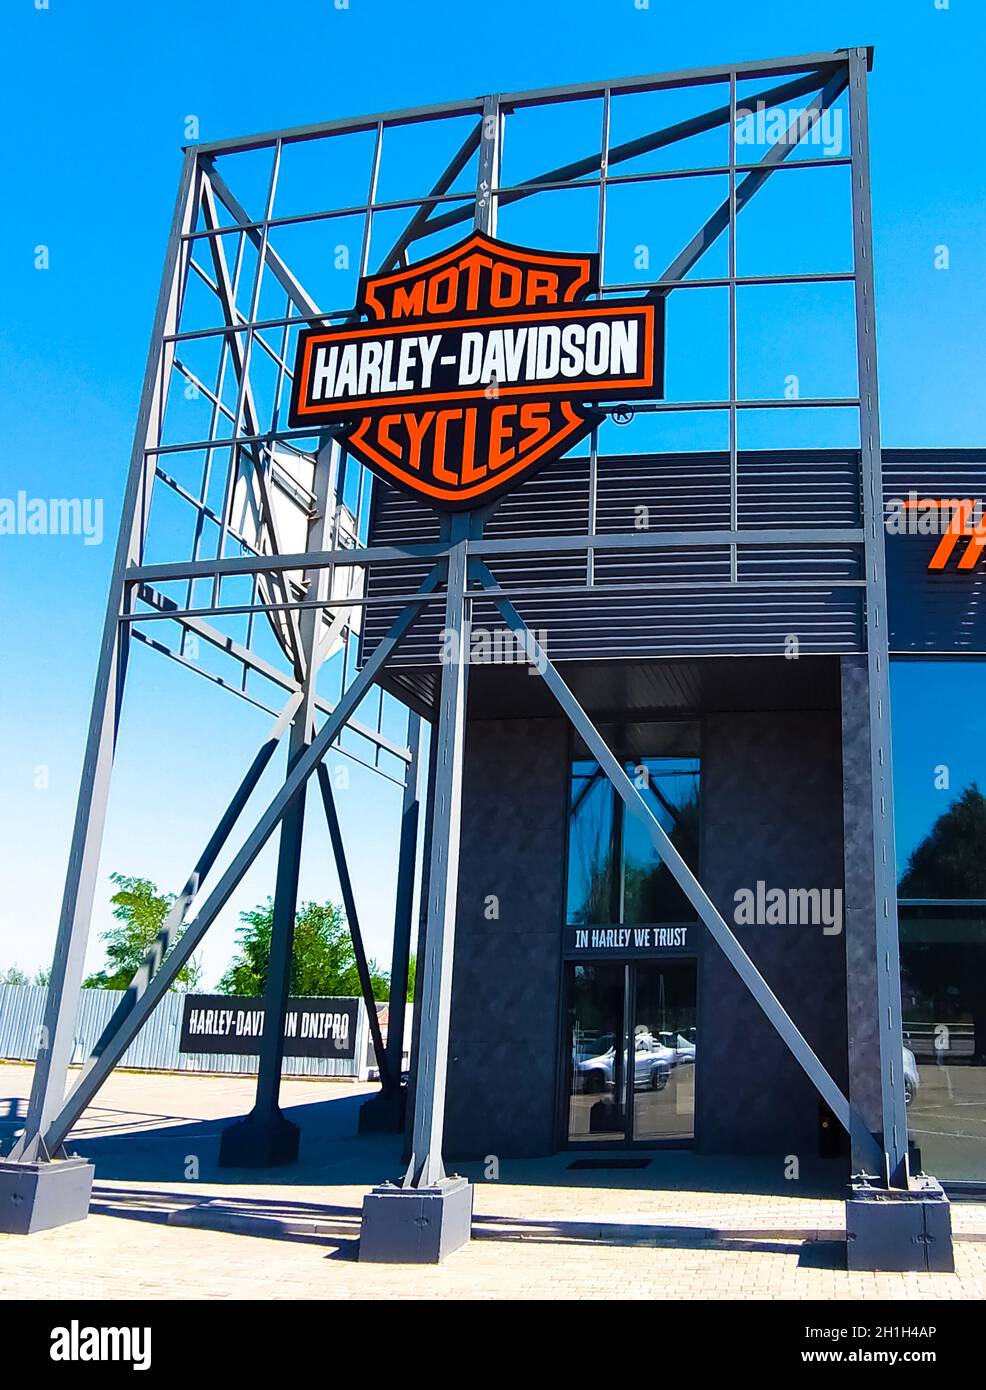 Kiev, Ukraine - 15 août 2020 : boutique et bureau Harley-Davidson.Harley-Davidson, ou Harley, est un fabricant américain de motos, fondé à Milwa Banque D'Images